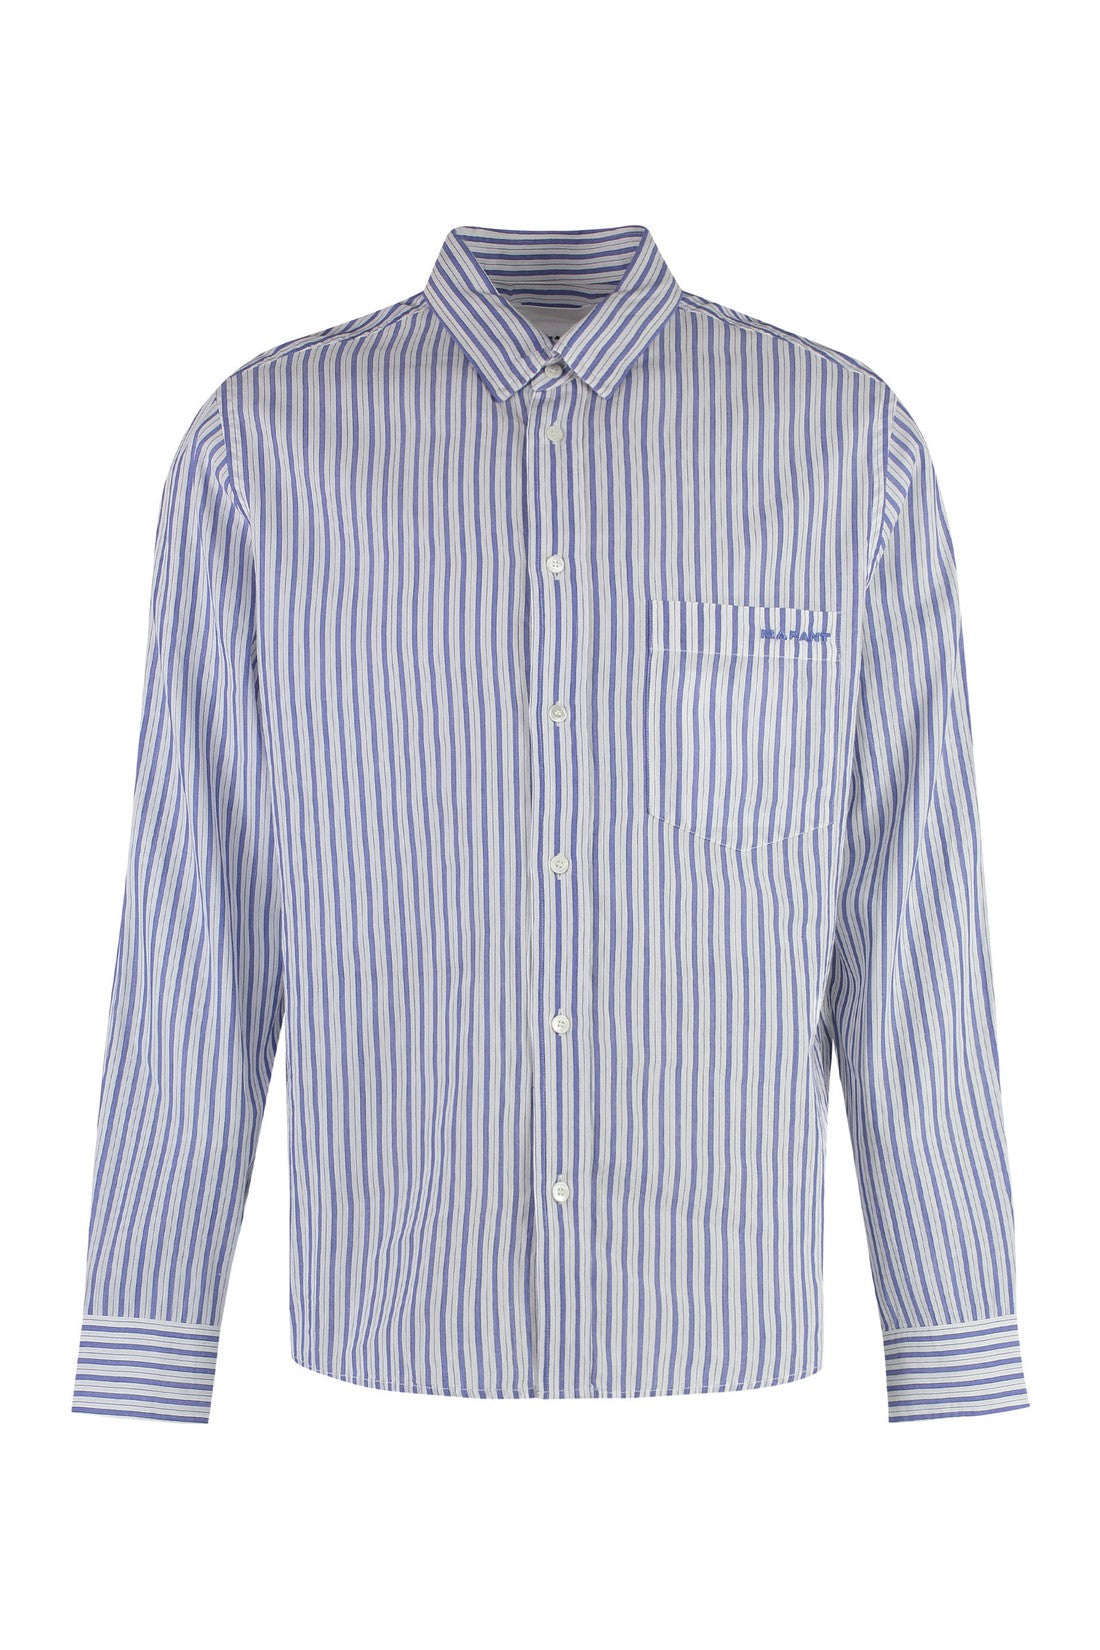 Marant-OUTLET-SALE-Jasolo Striped cotton shirt-ARCHIVIST